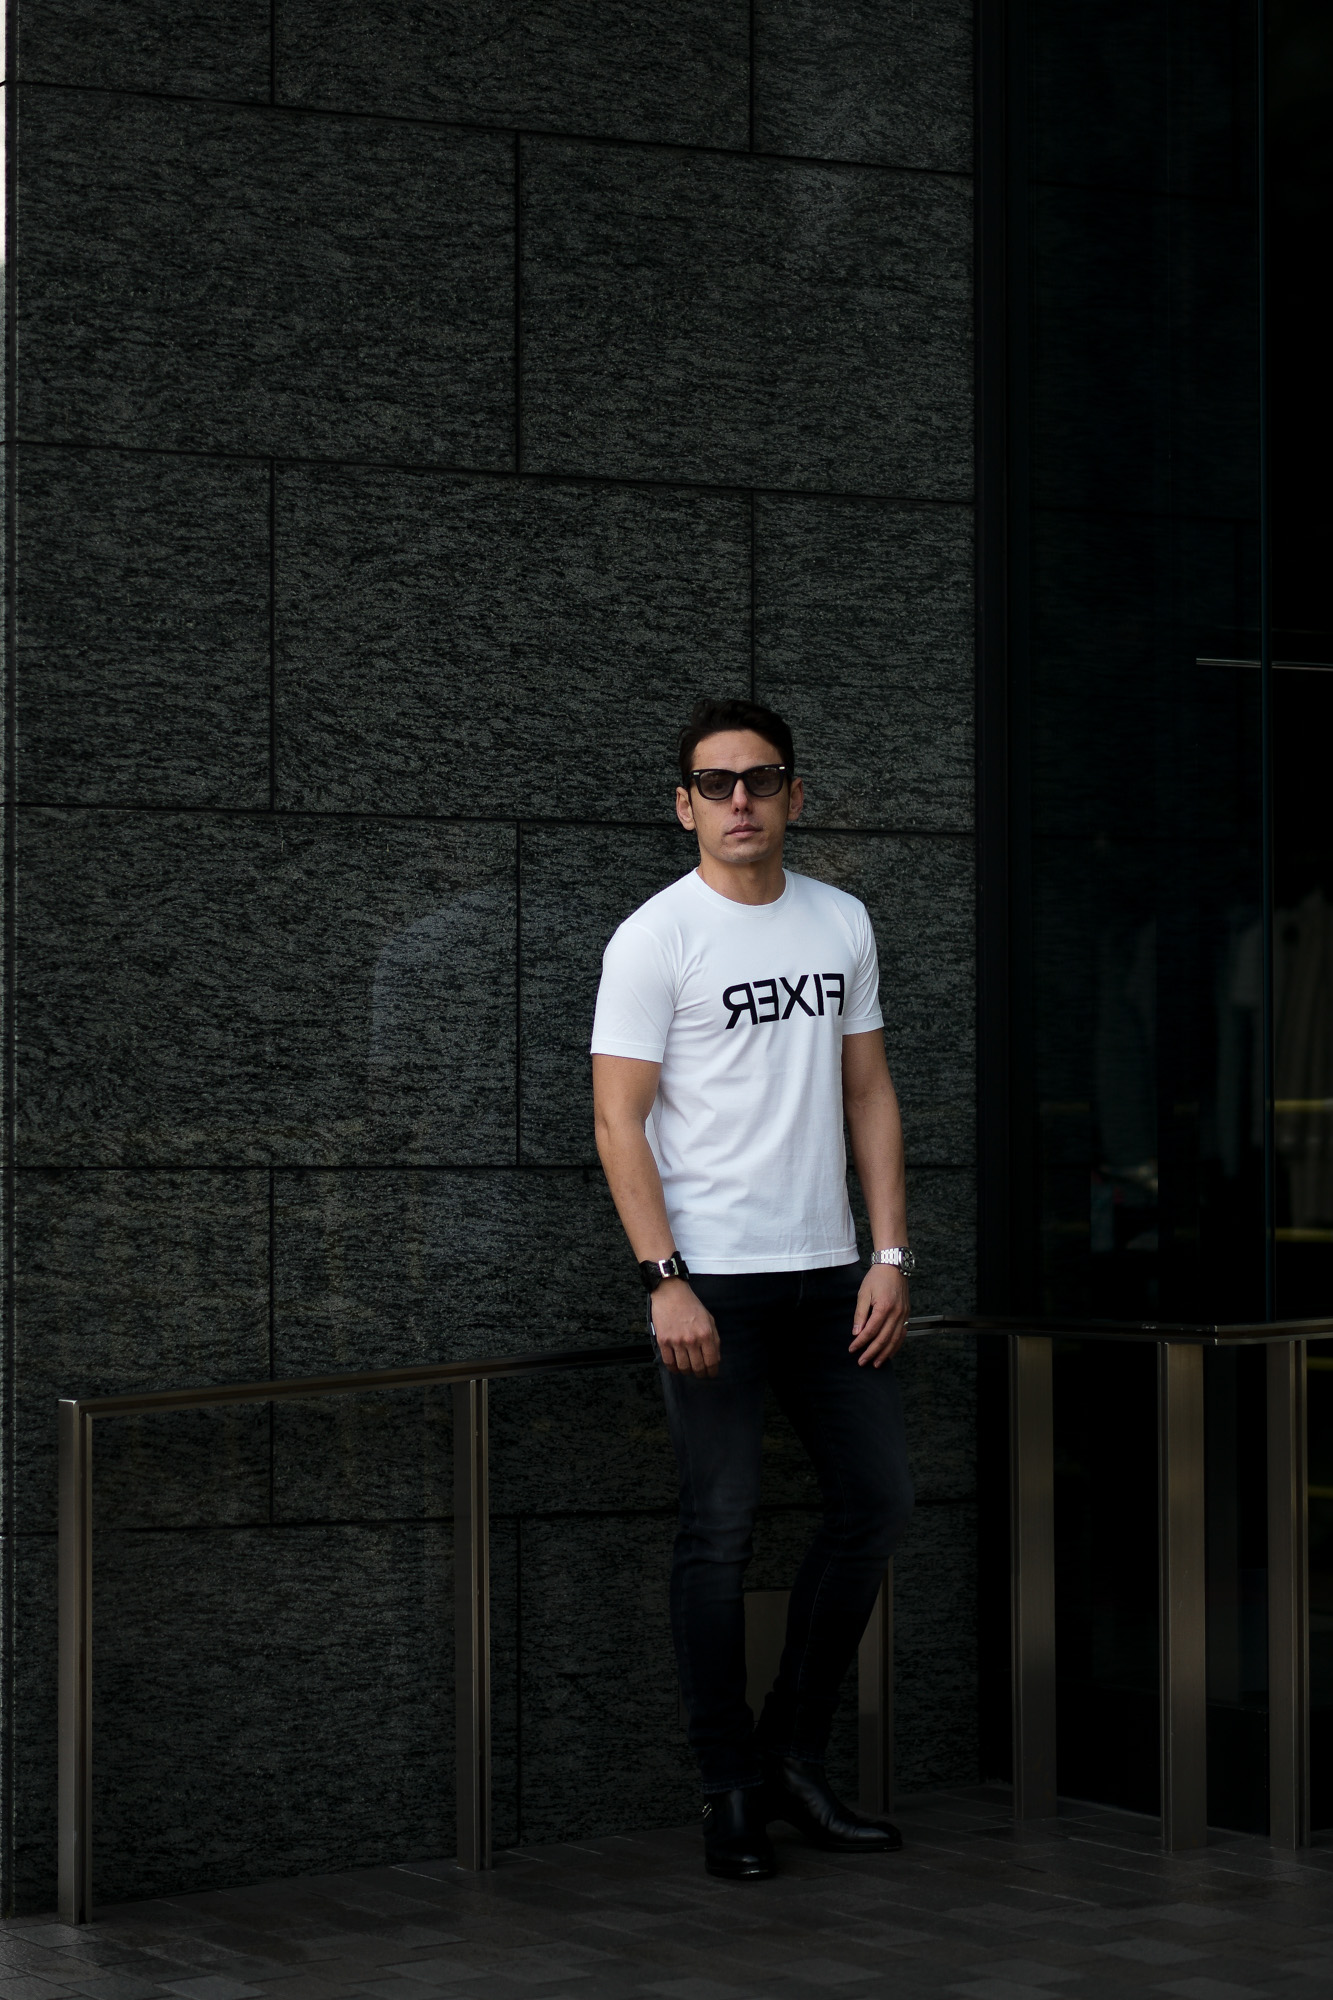 FIXER (フィクサー) FTS-03 Reverse Print Crew Neck T-shirt リバースプリント Tシャツ WHITE (ホワイト) 【ご予約開始】【2021.7.19(Mon)～2021.8.08(Sun)】 愛知 名古屋 Alto e Diritto altoediritto アルトエデリット Tシャツ